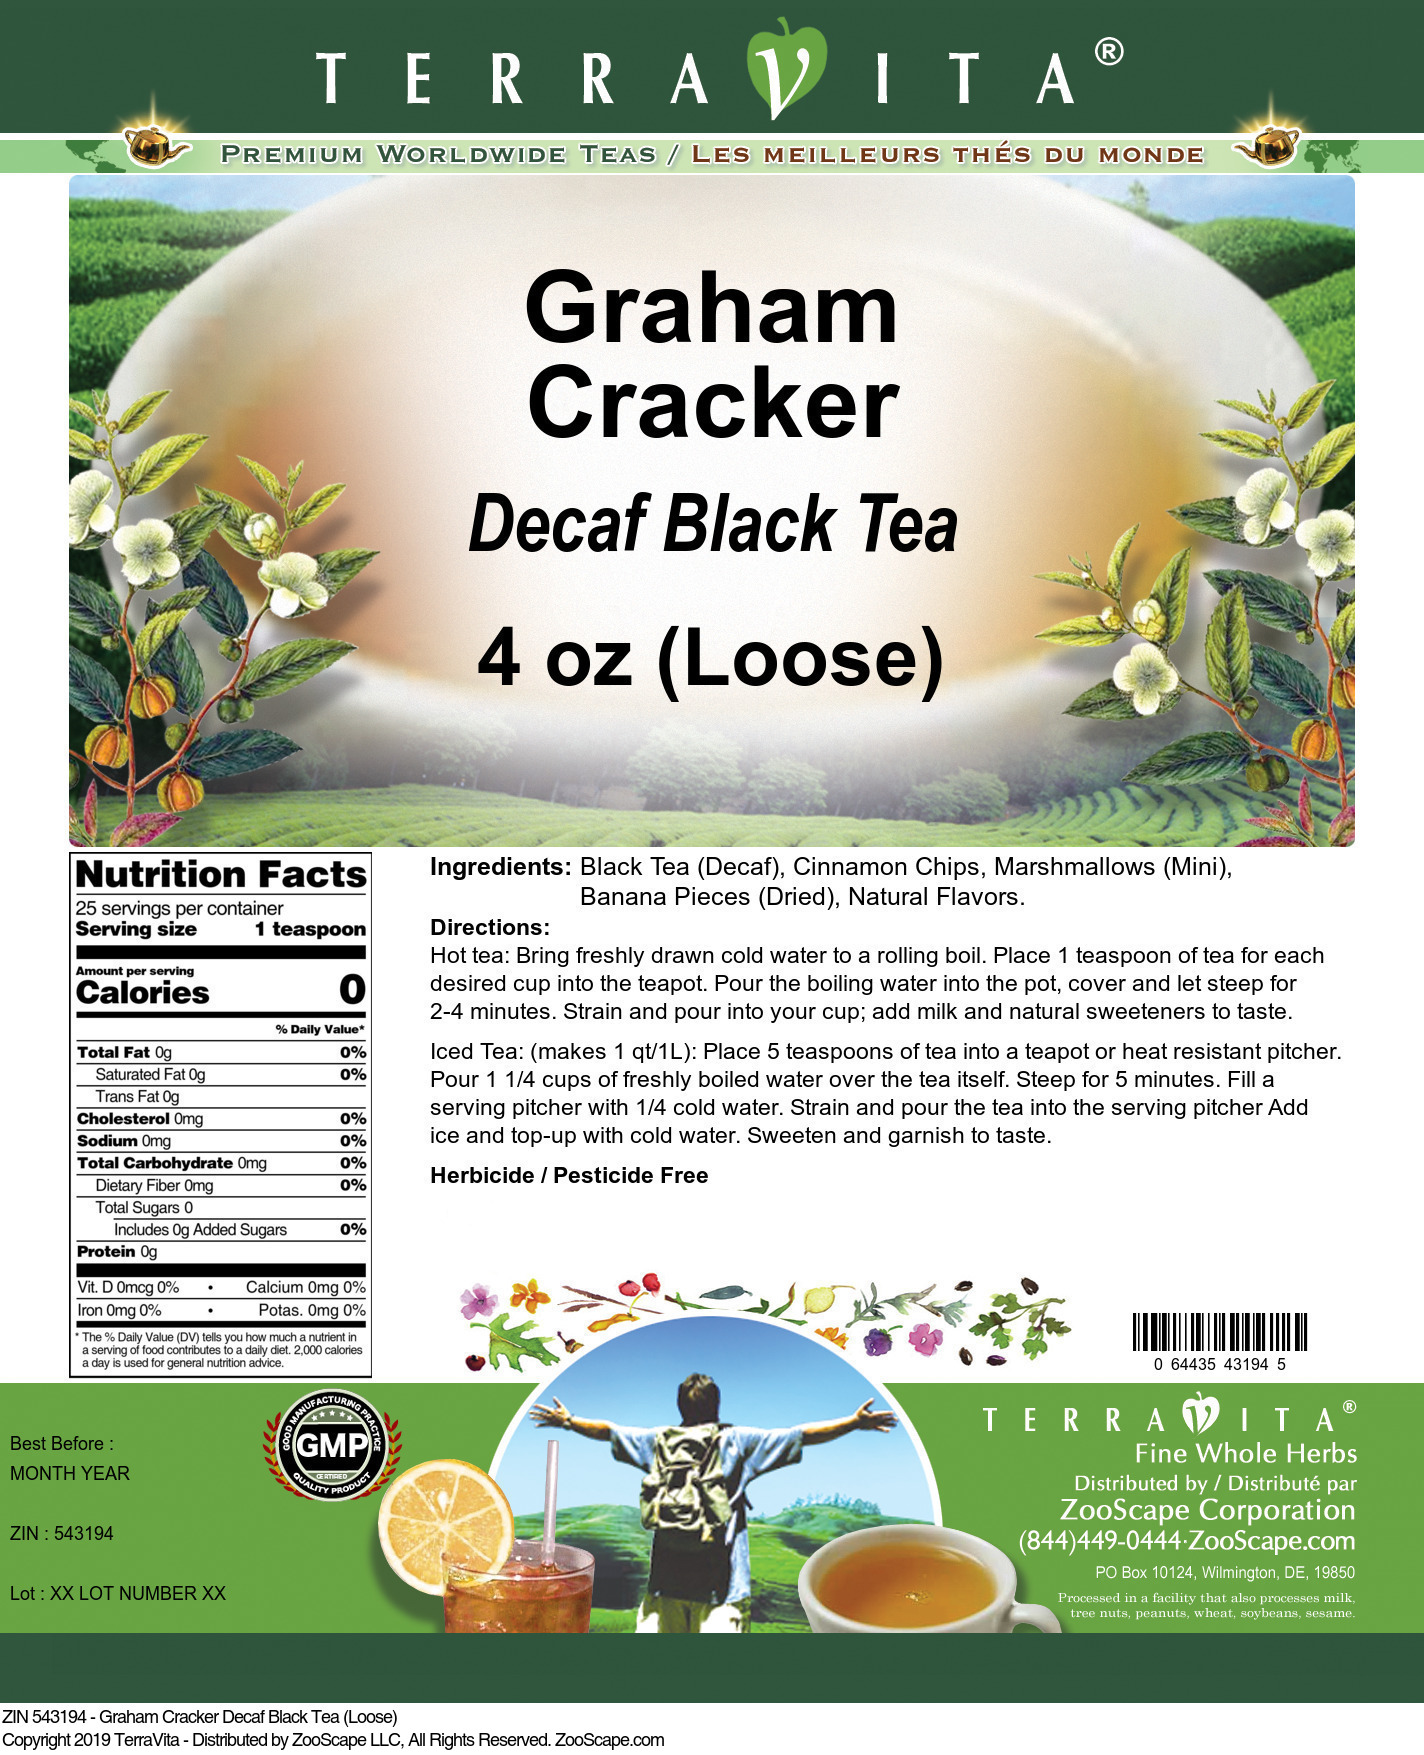 Graham Cracker Decaf Black Tea (Loose) - Label